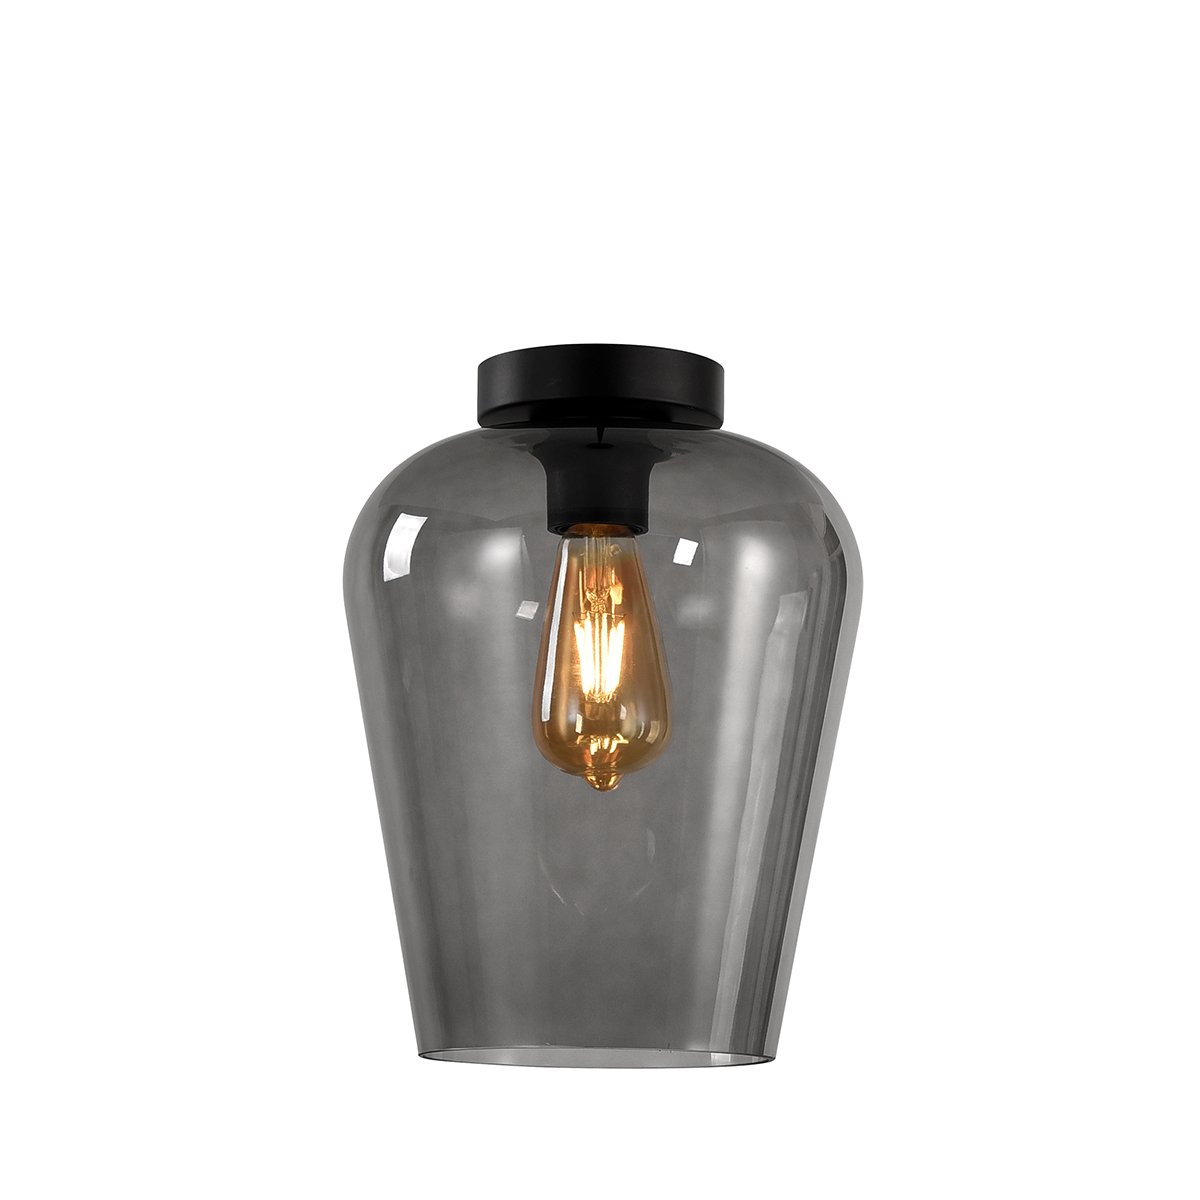 Loftlampe kalk grå glas Agordo - Ø 24 cm